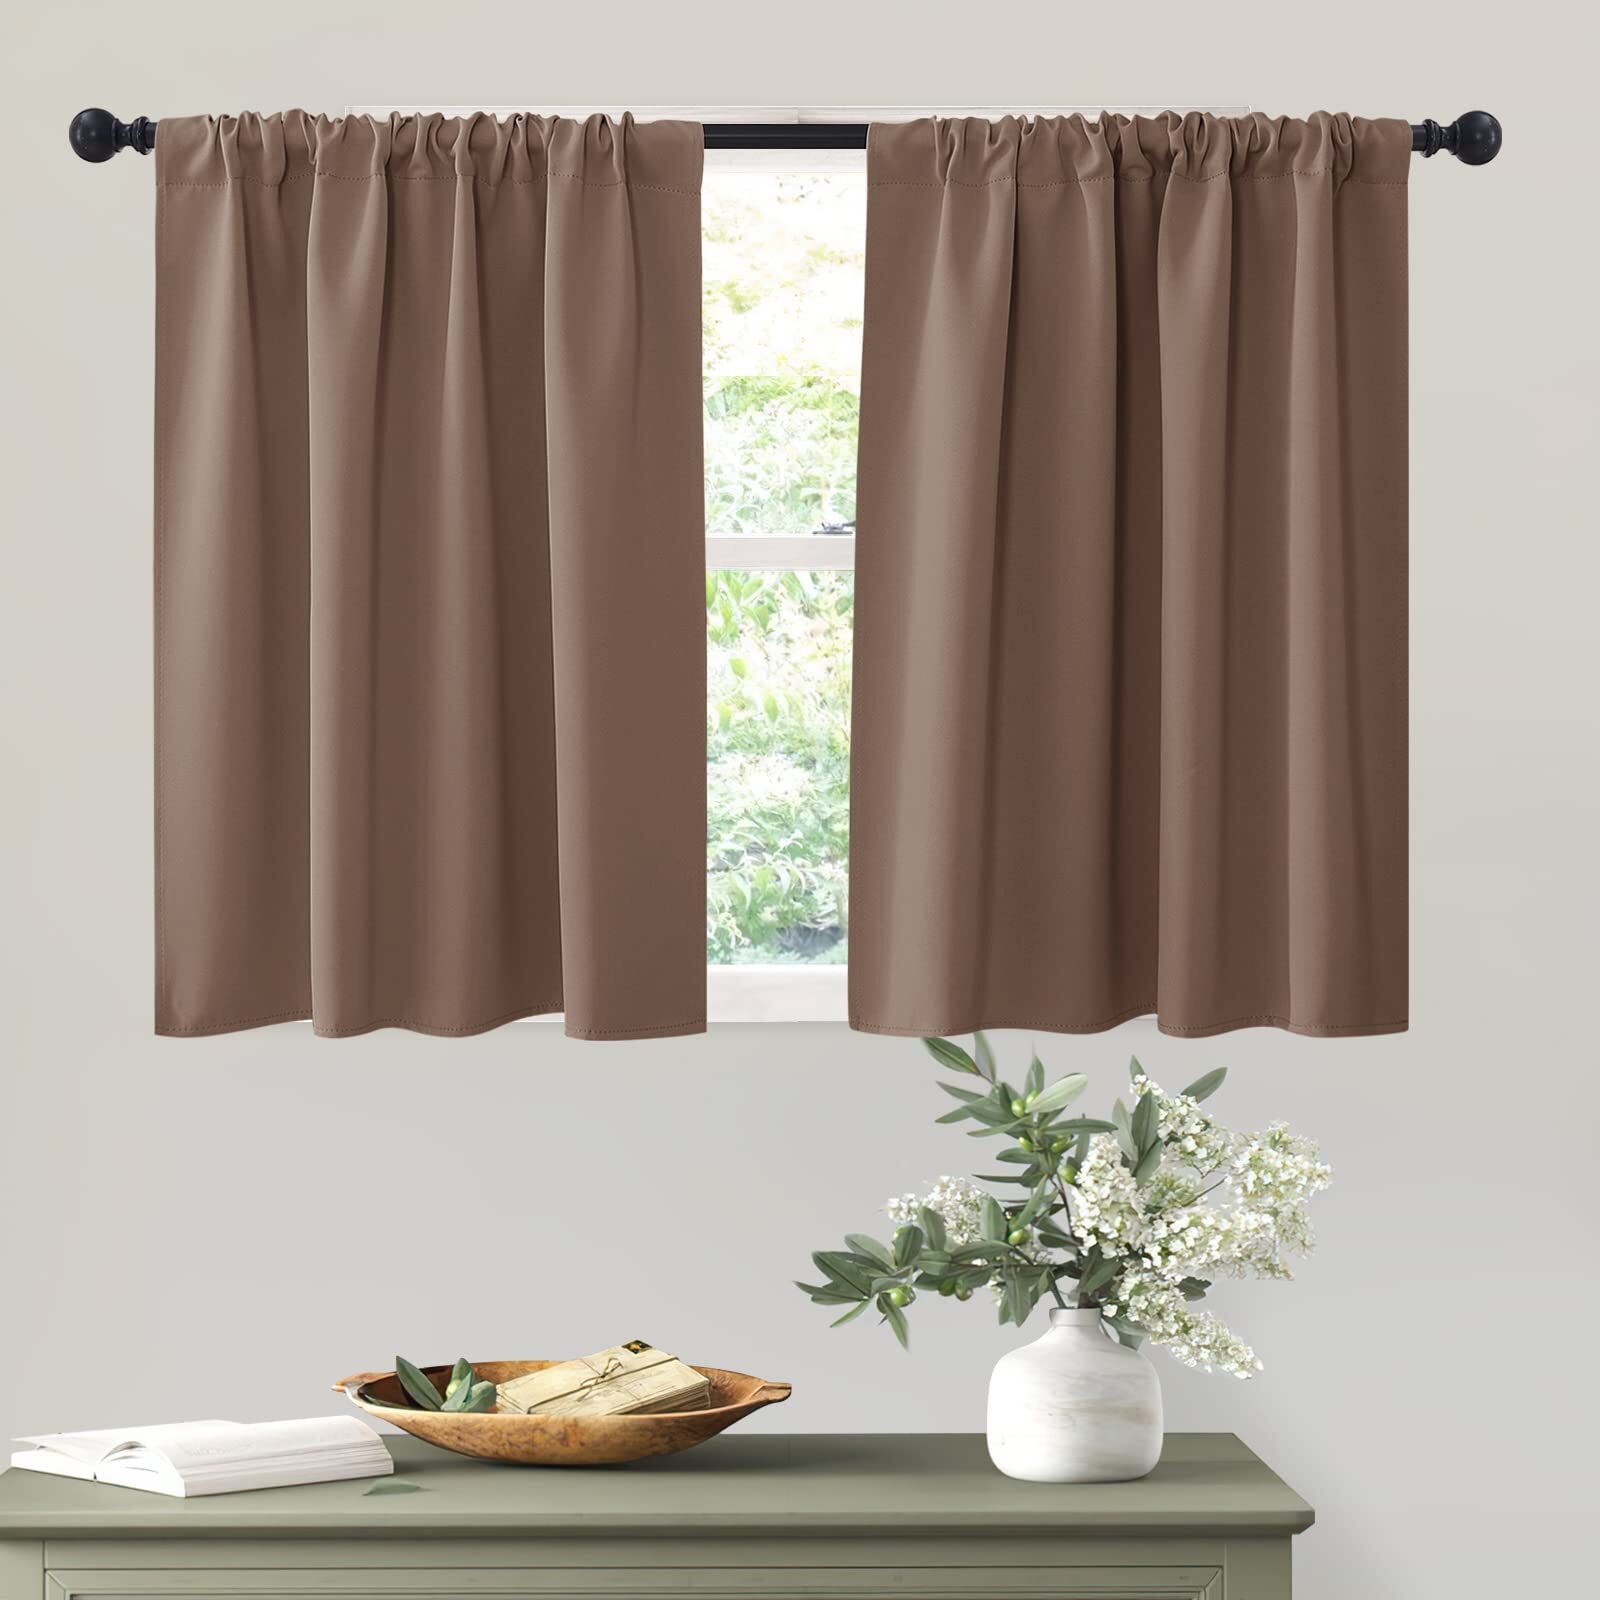 DIY Small Window Bathroom Curtains